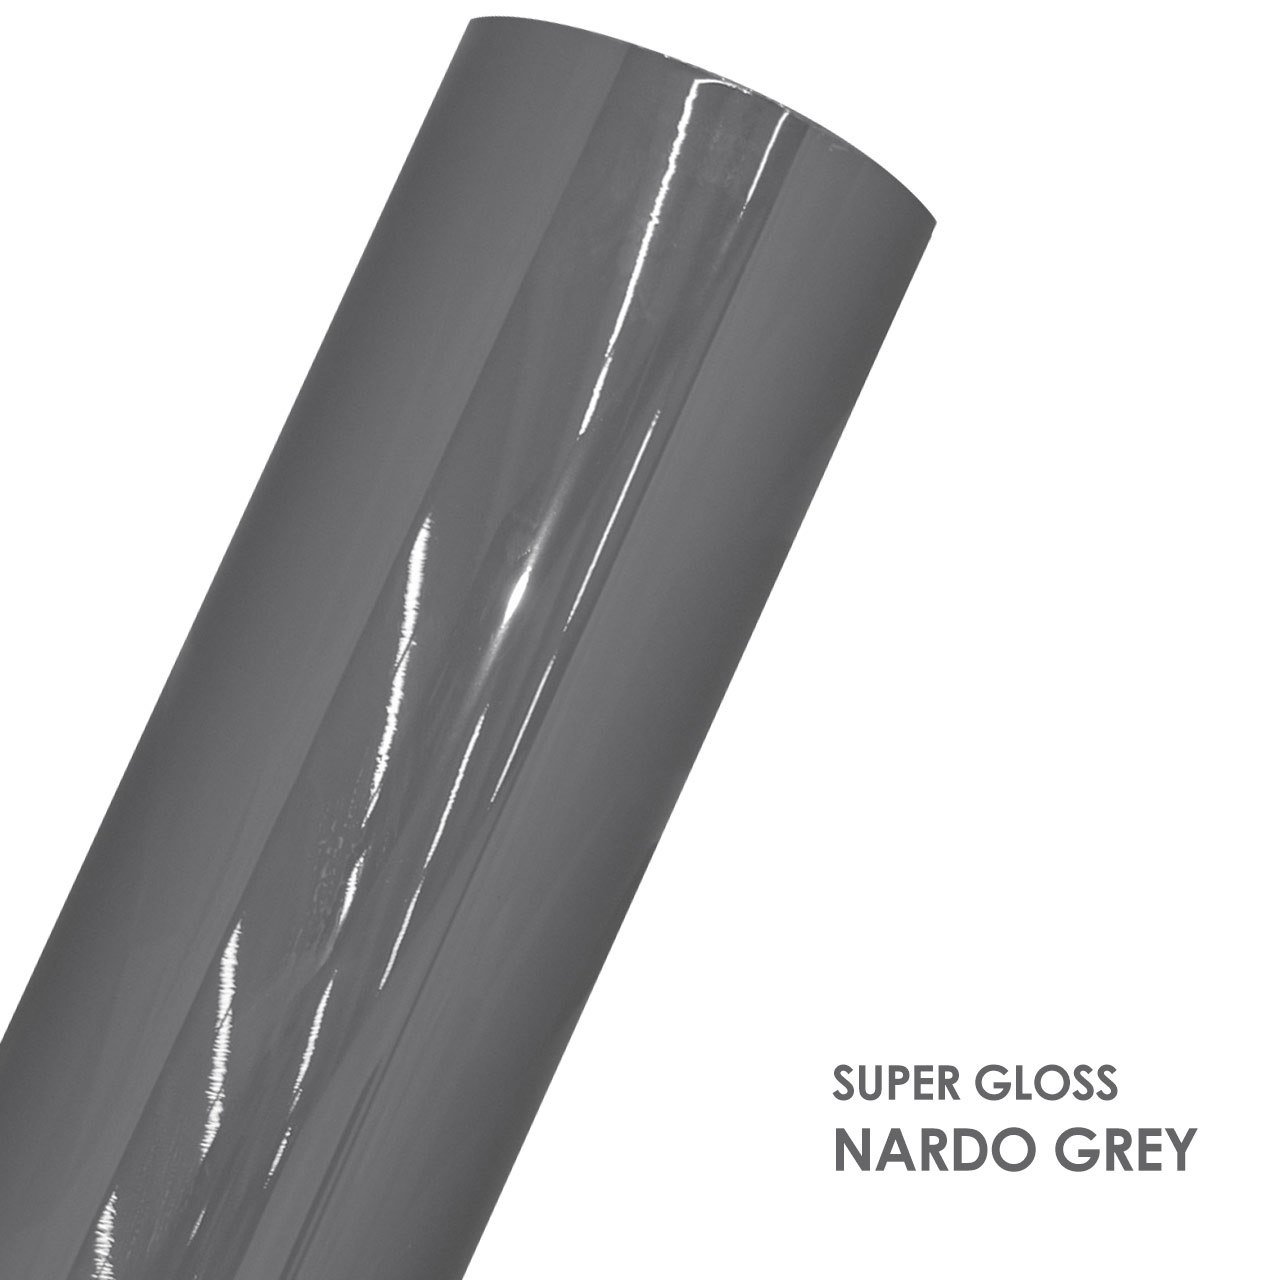 SUPER GLOSS NARDO GREY